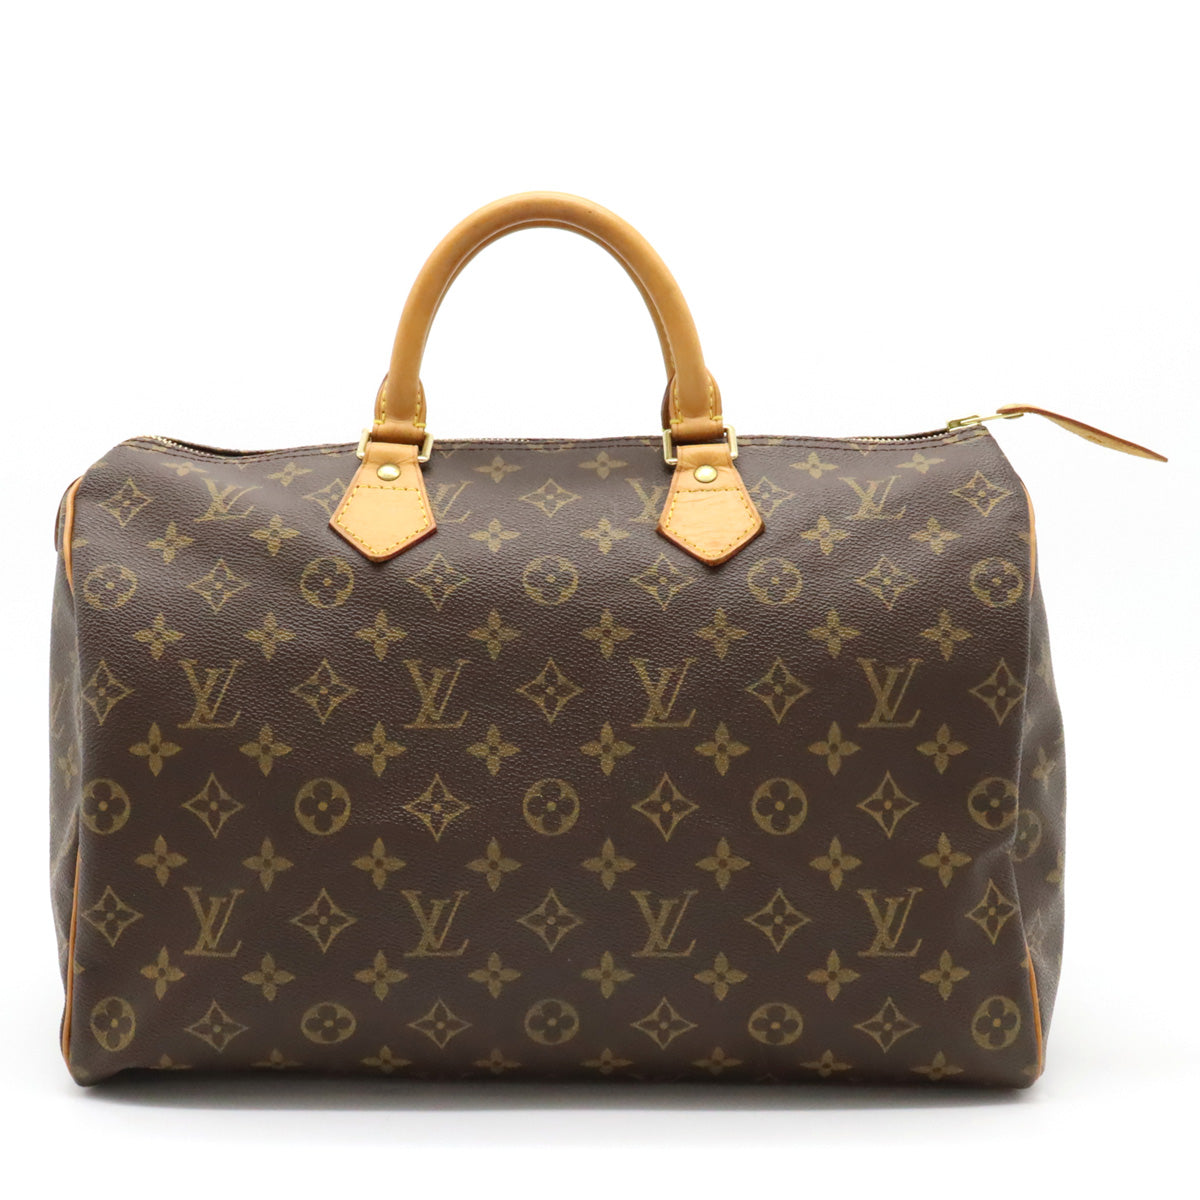 Louis Vuitton Speedy & Bandeau  Vintage louis vuitton handbags, Bags, Louis  vuitton handbags